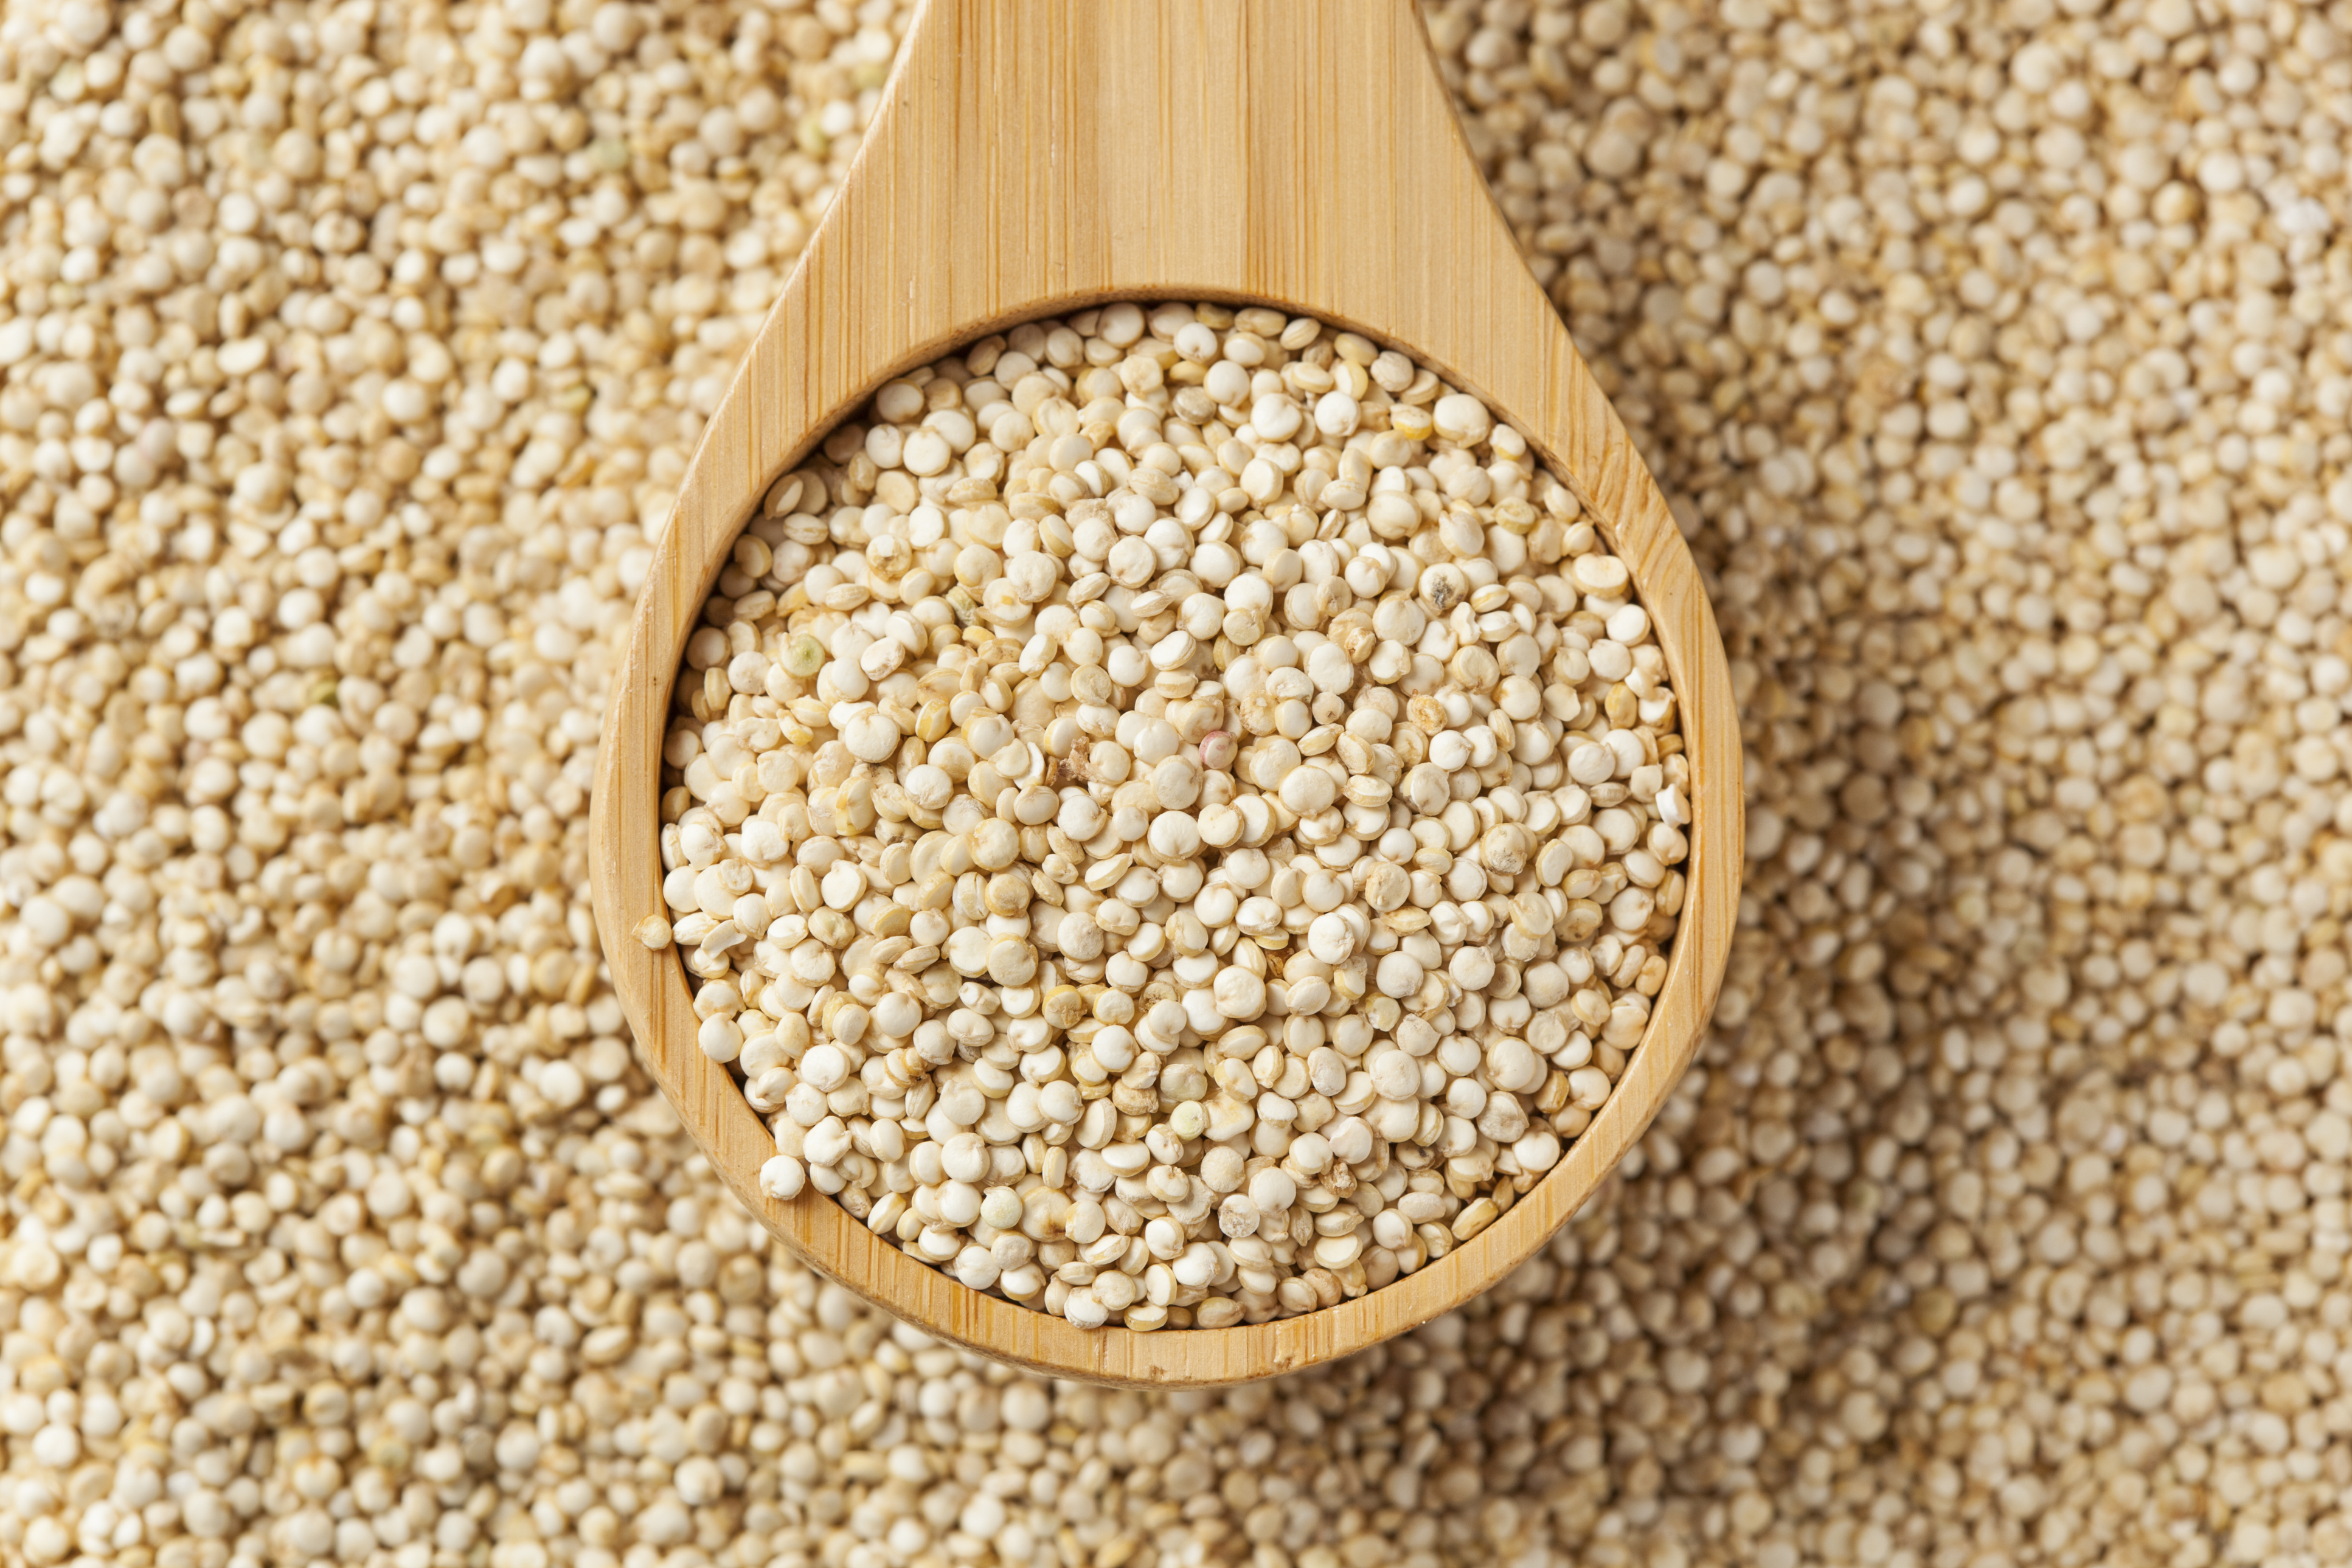 Investigadores descifran el genoma de la quinoa, planta andina esperanza mundial